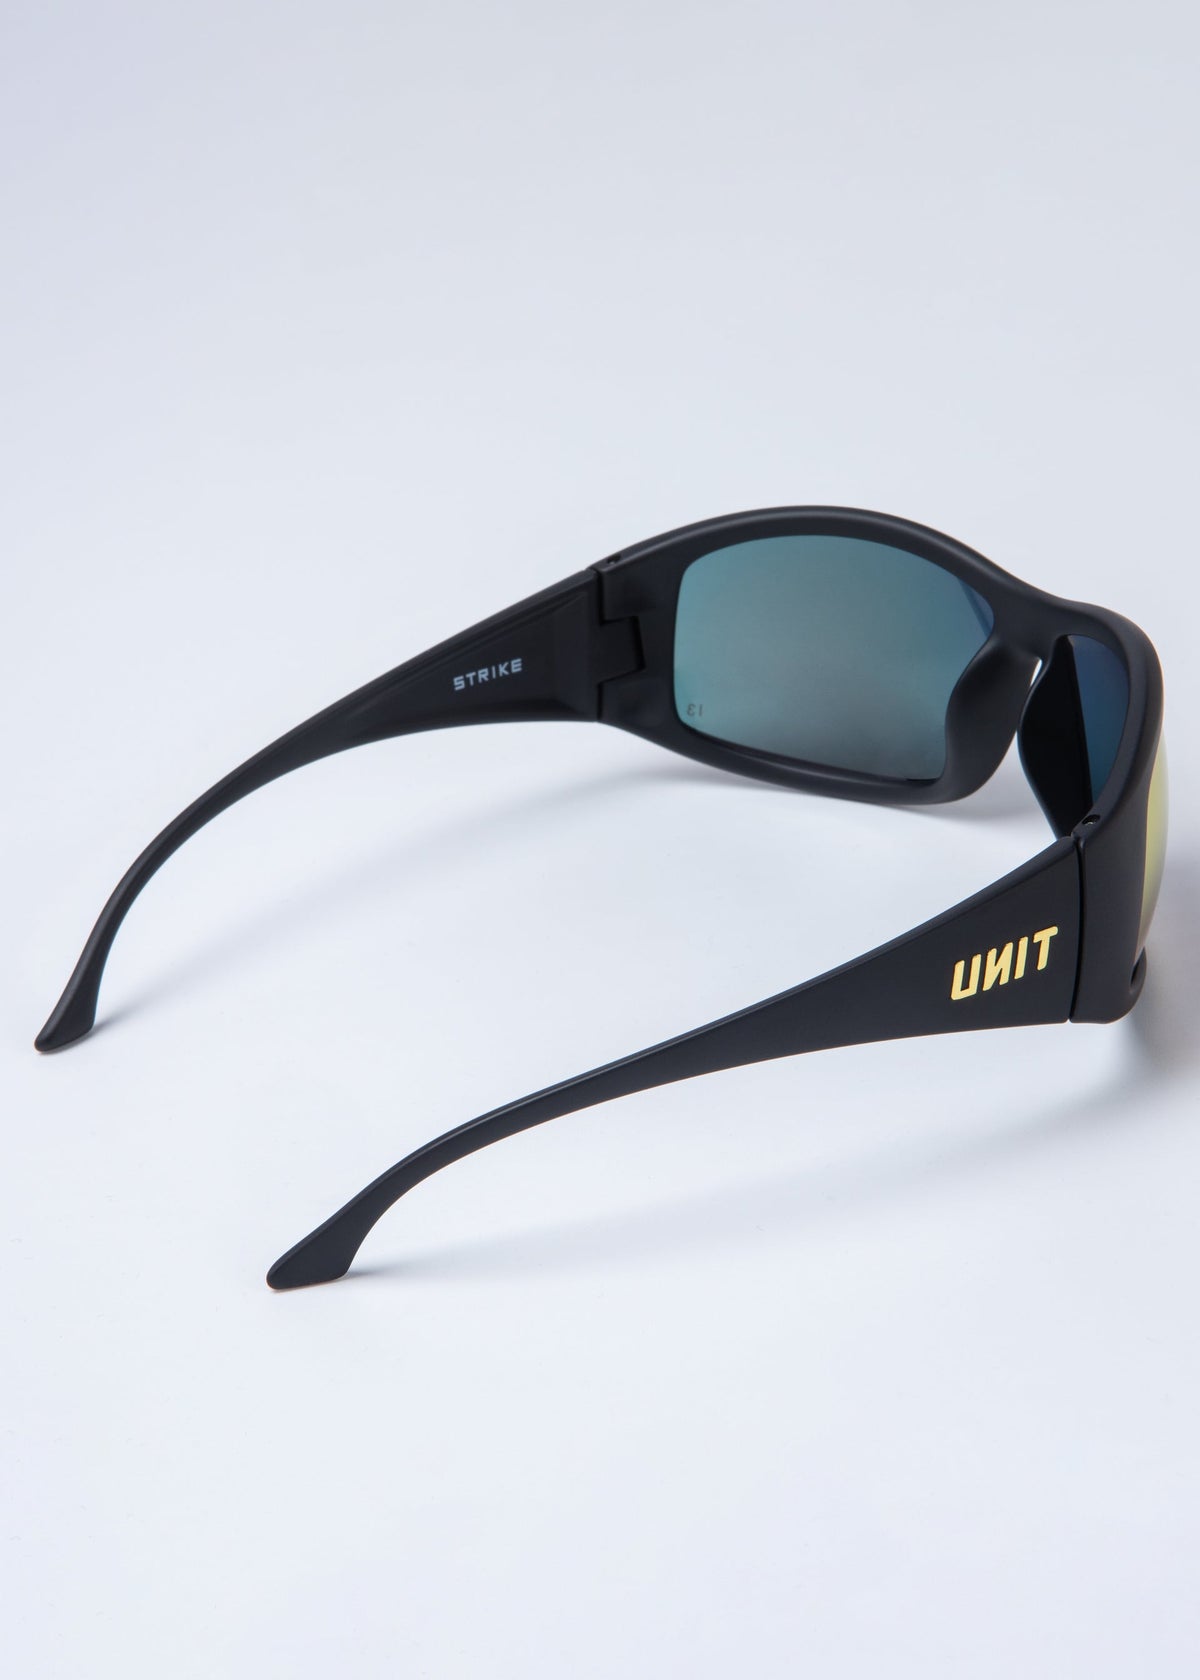 UNIT Strike Safety Glasses